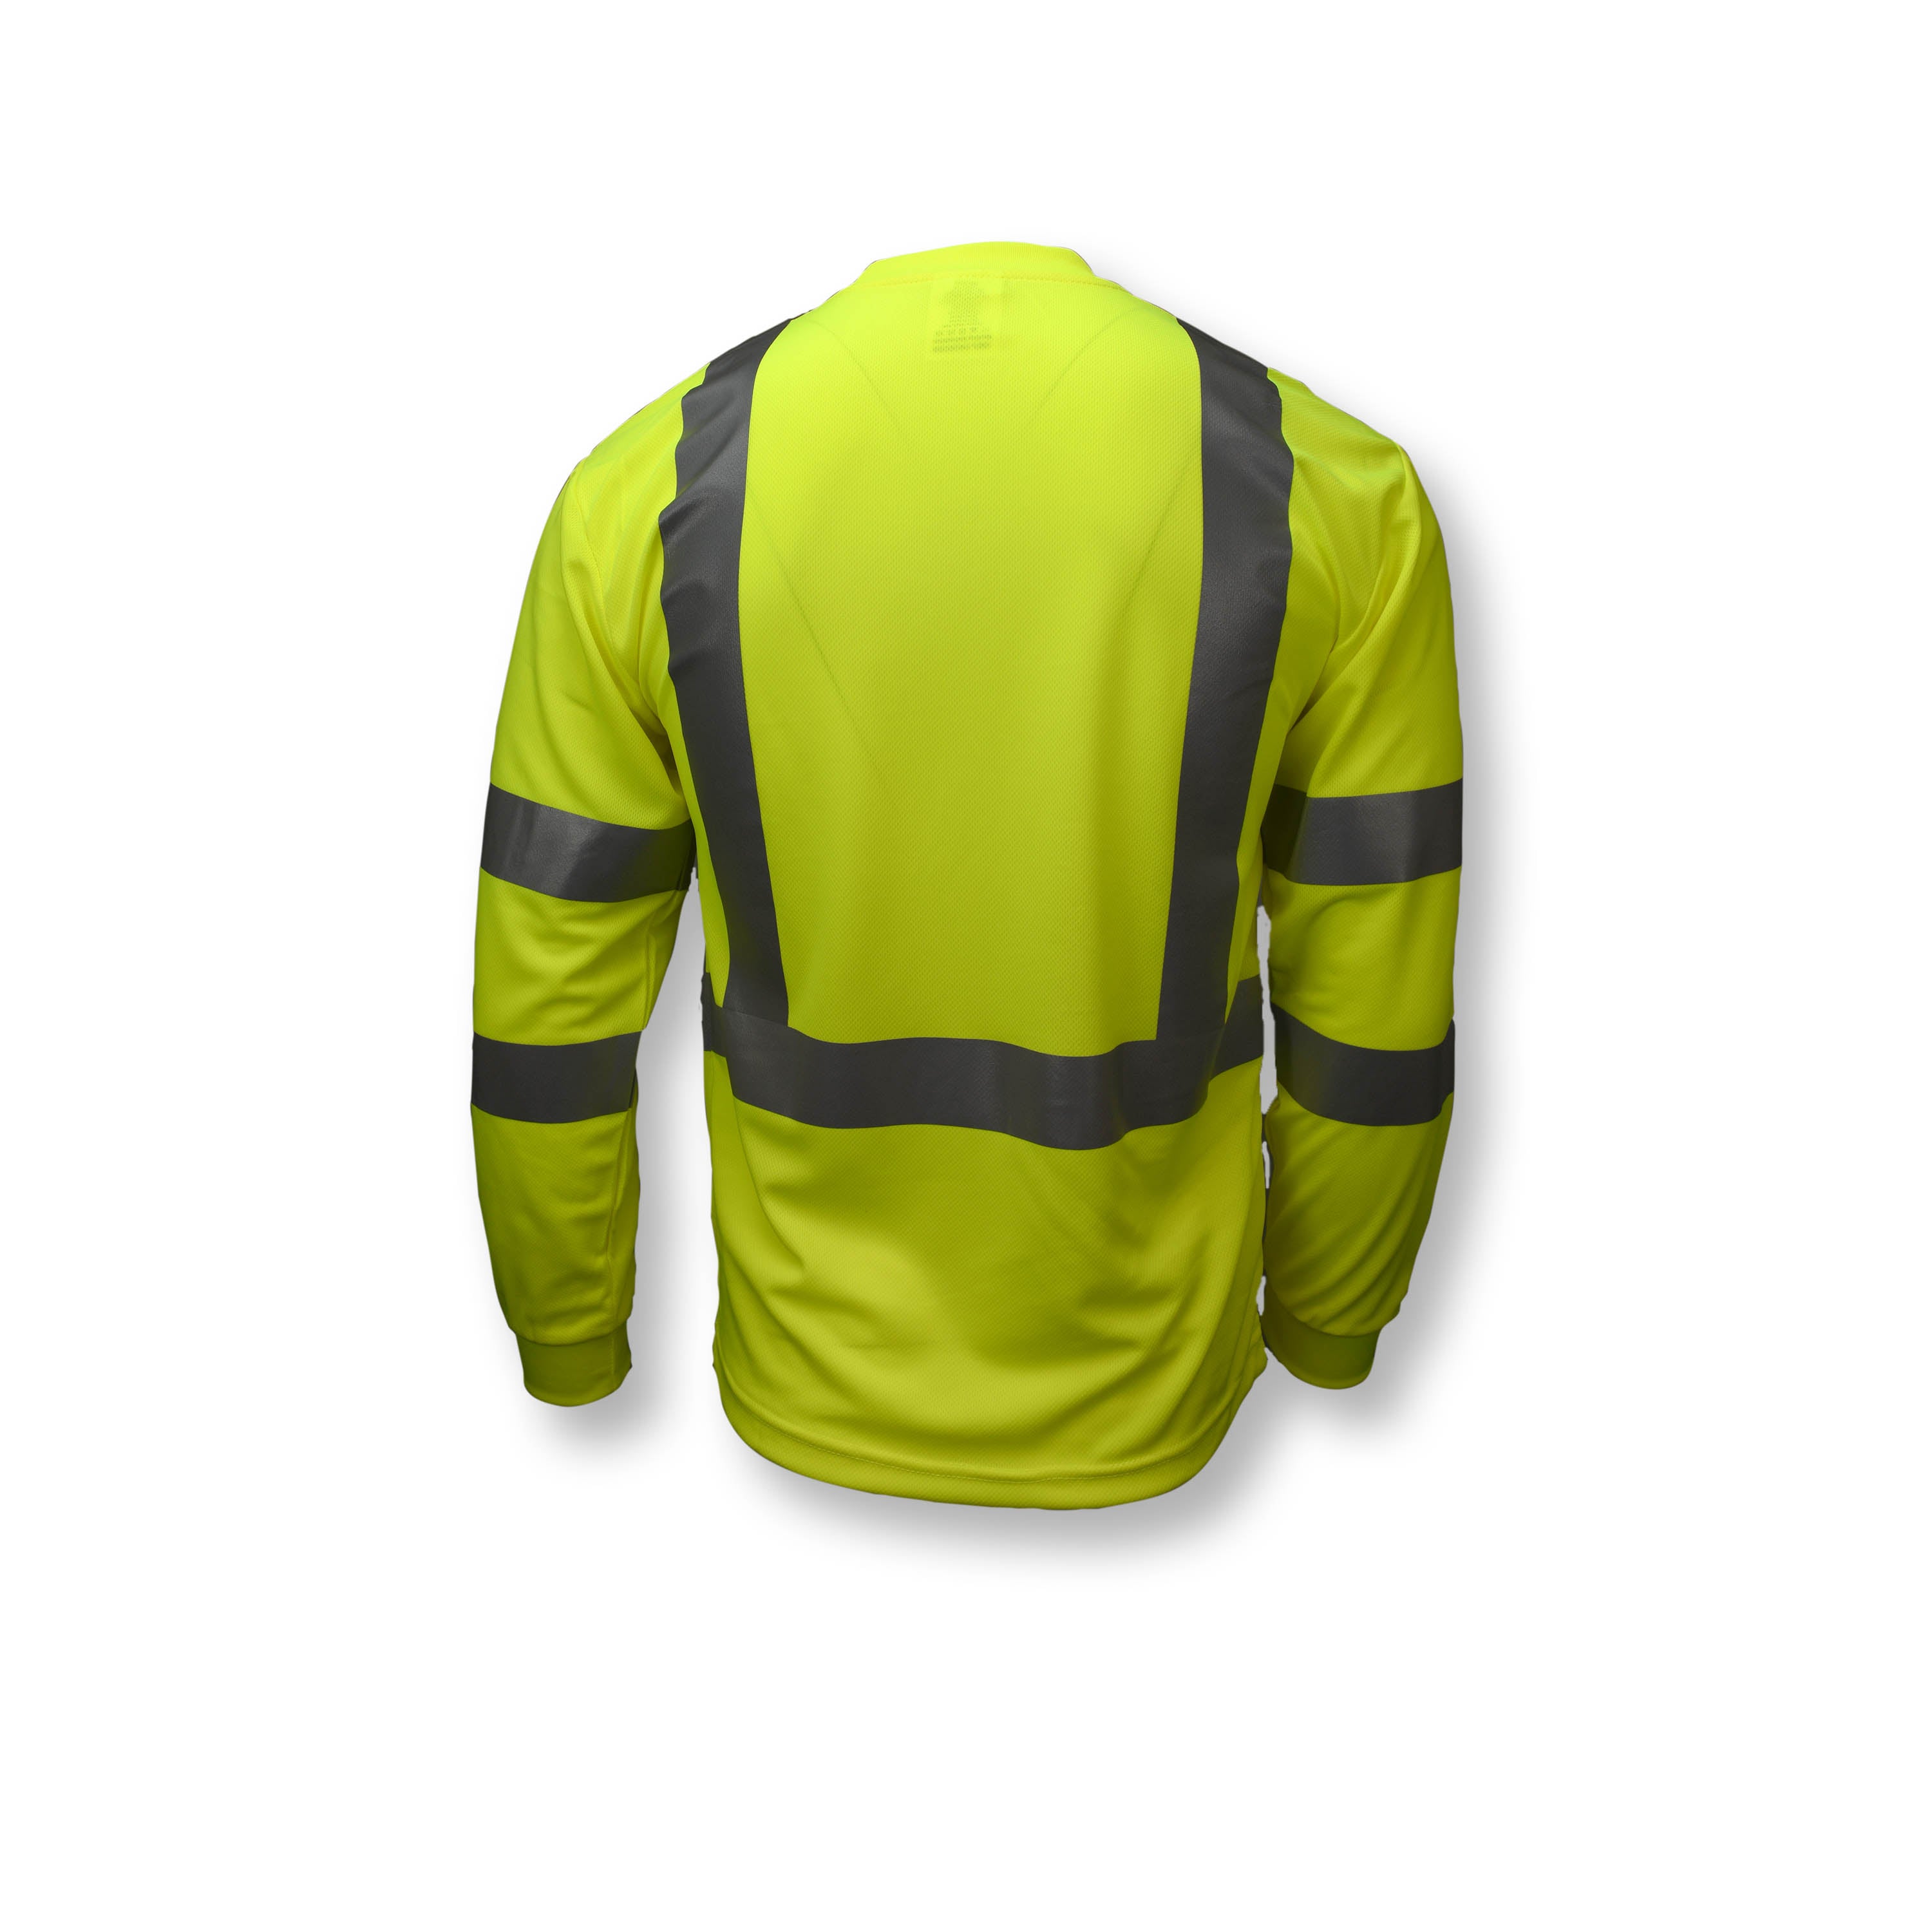 Camiseta de seguridad de manga larga Clase 3 que absorbe la humedad ST21-3